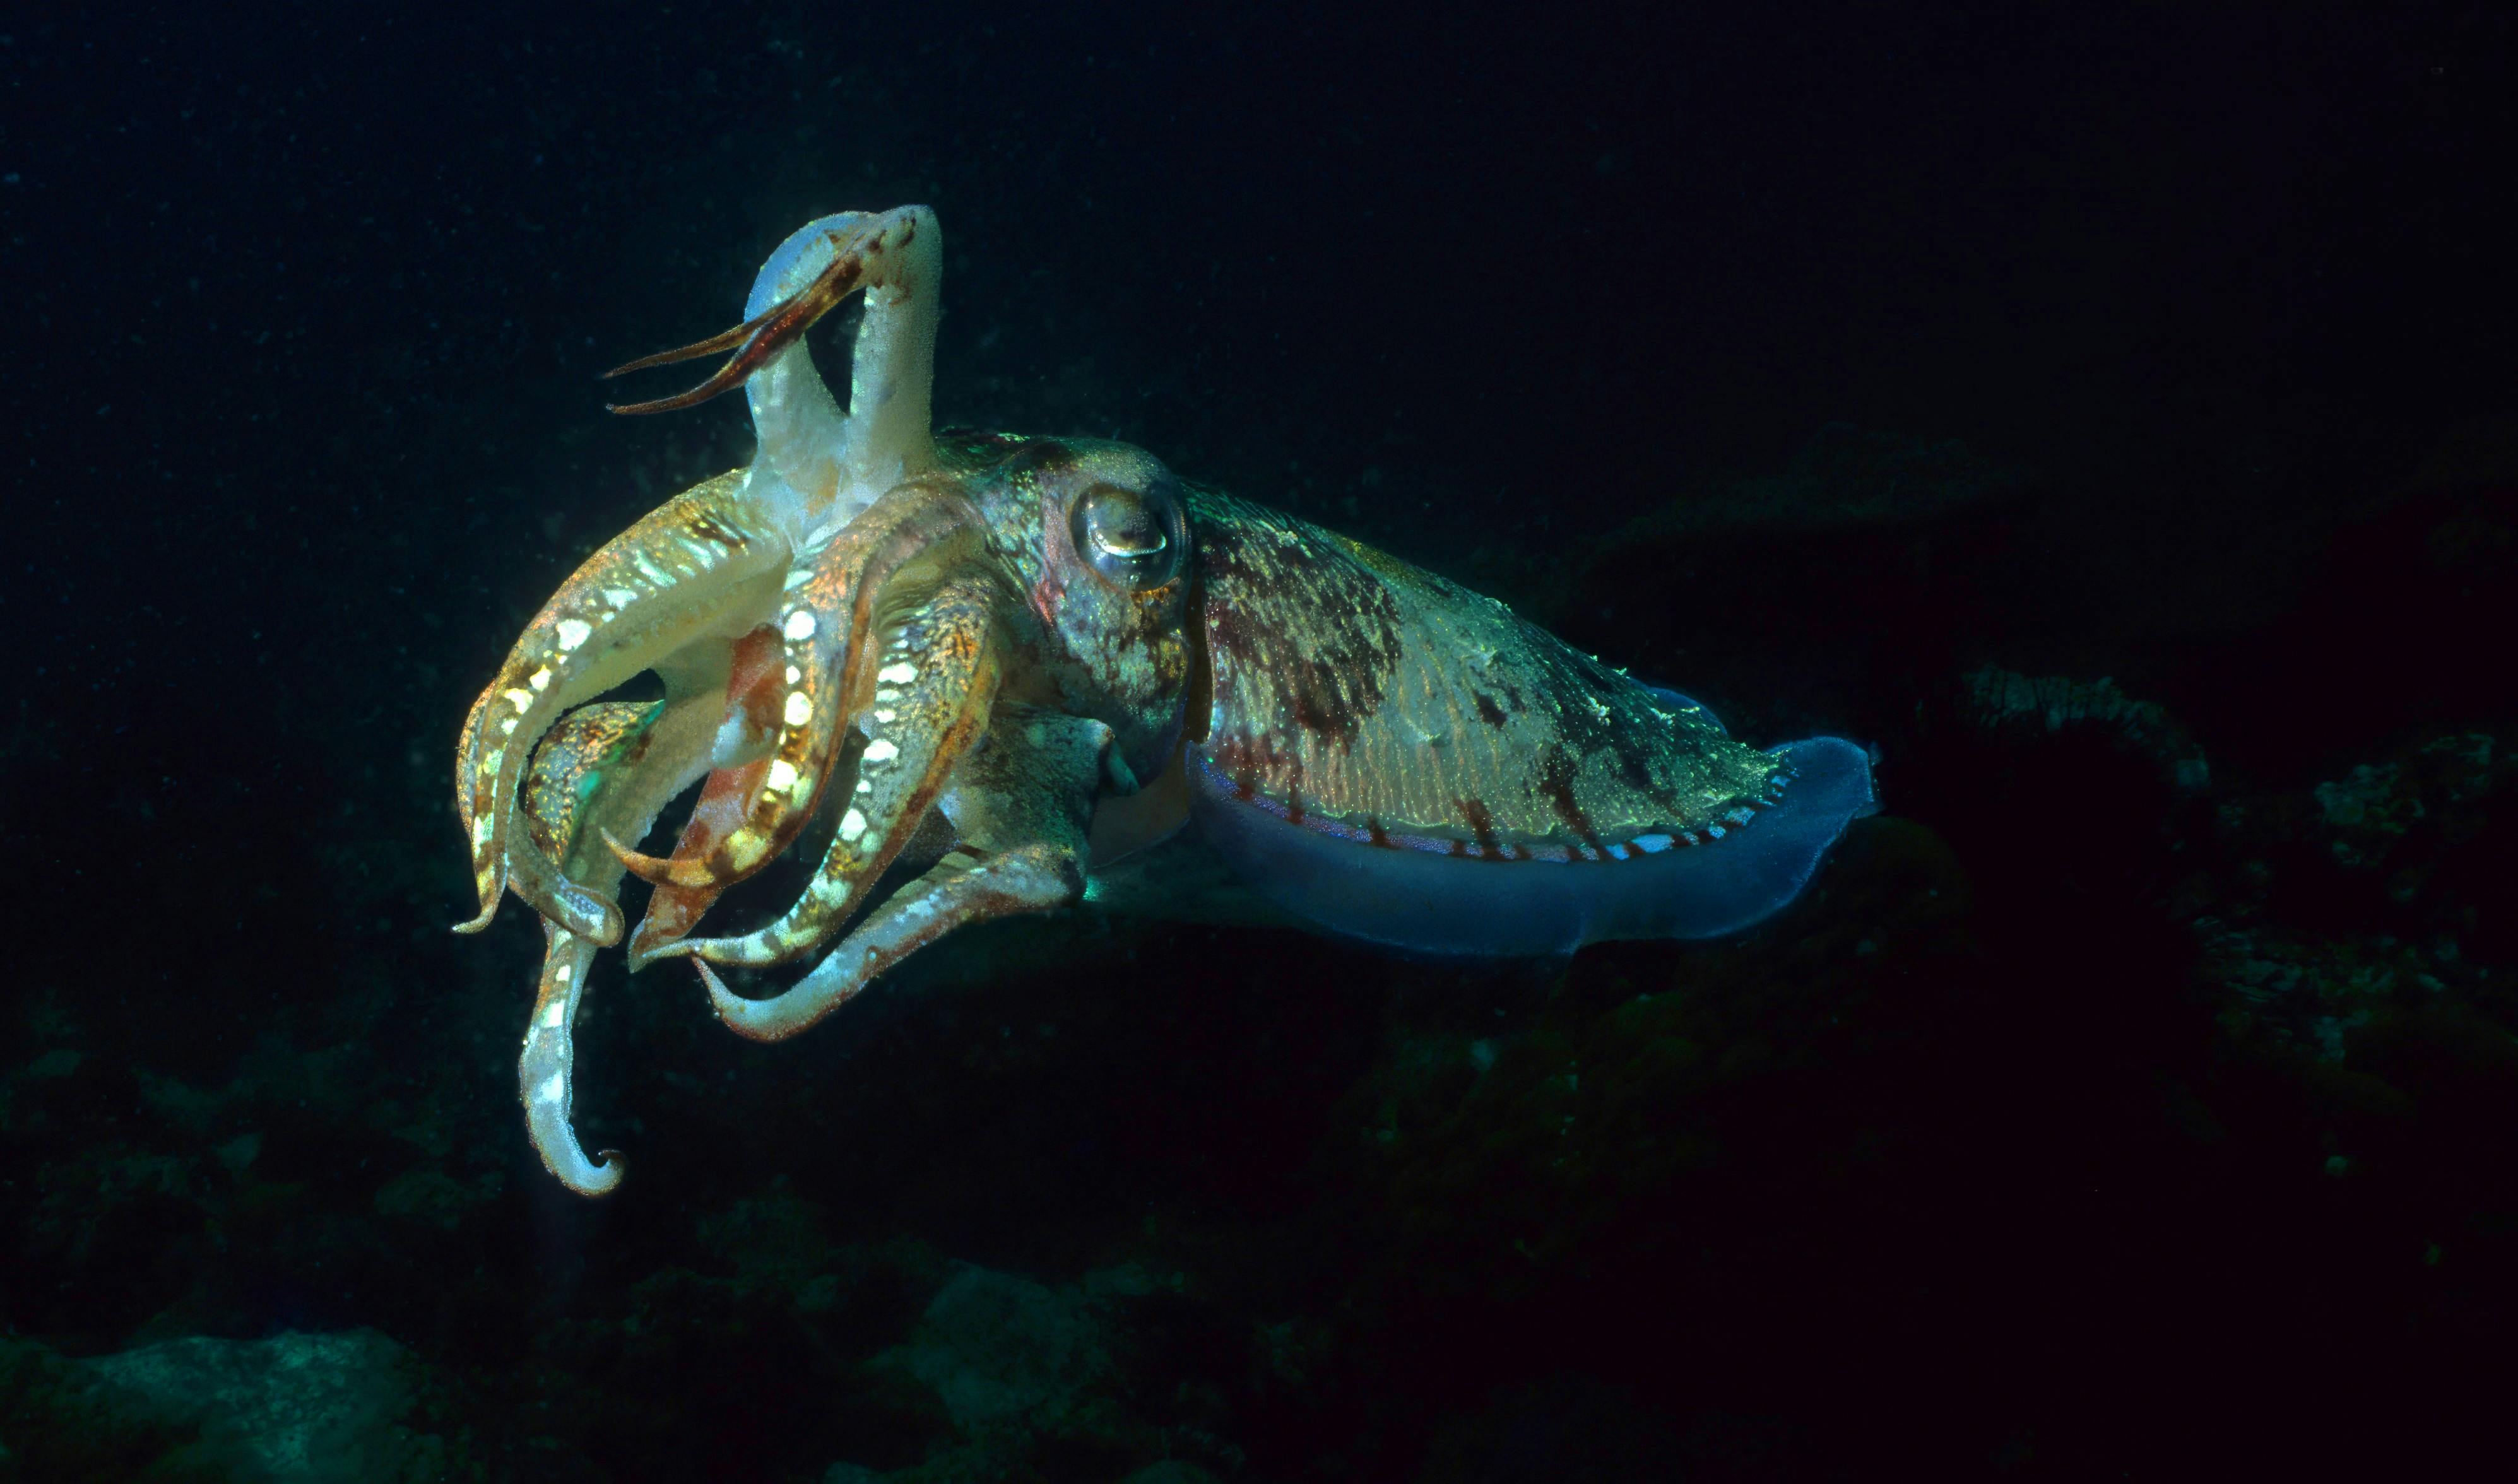 En tiarmet blæksprutte i gang med at skifte farve. Ved hjælp af specielle pigmentceller i blæksprutten kan den lynhurtigt ændre udseende, så den enten bliver næsten usynlig for sine fjender eller kan signalere til andre blæksprutter.